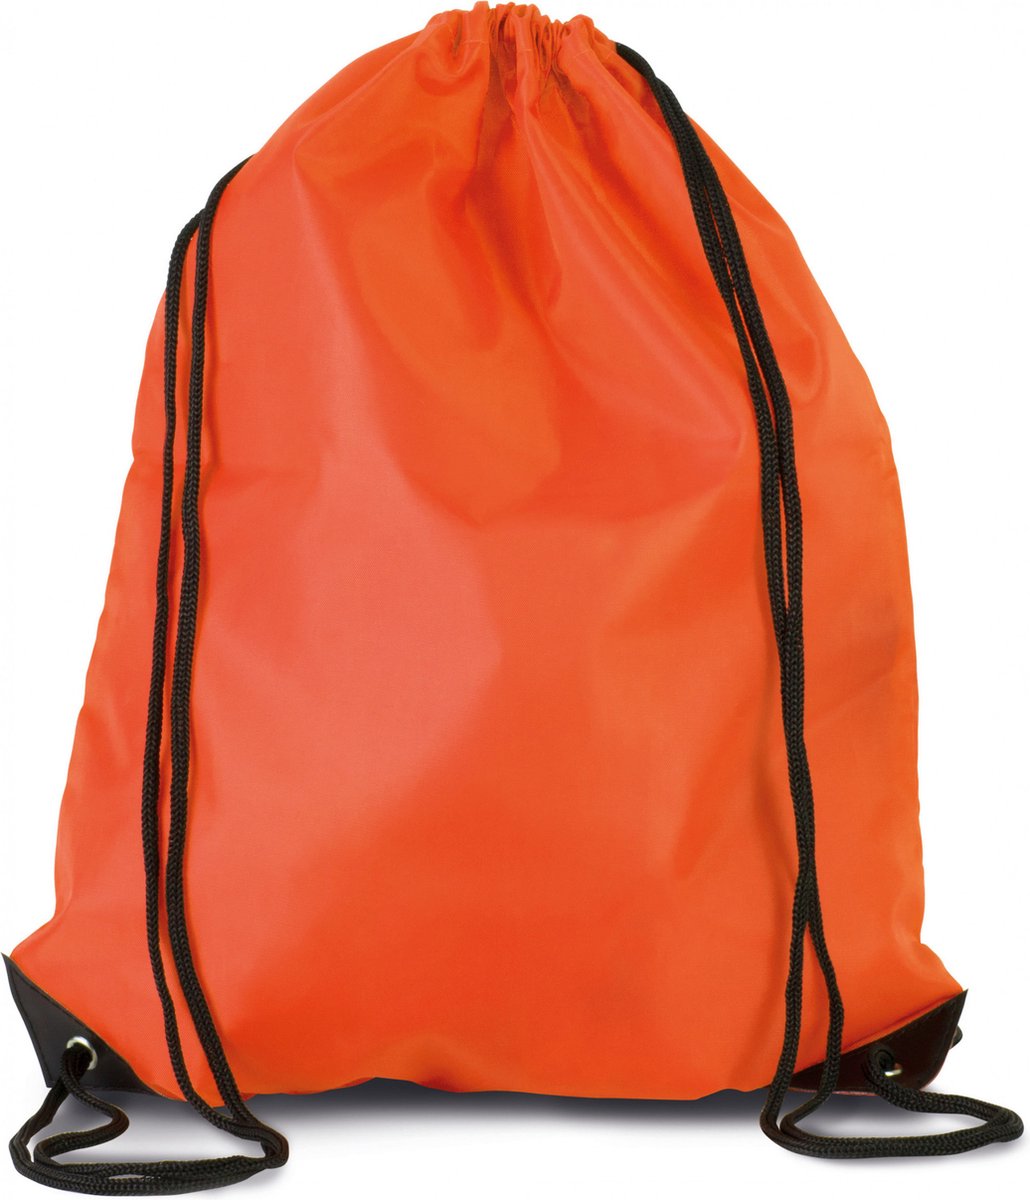 8x stuks sport gymtas/draagtas in kleur oranje met handig rijgkoord 34 x 44 cm van polyester en verstevigde hoeken